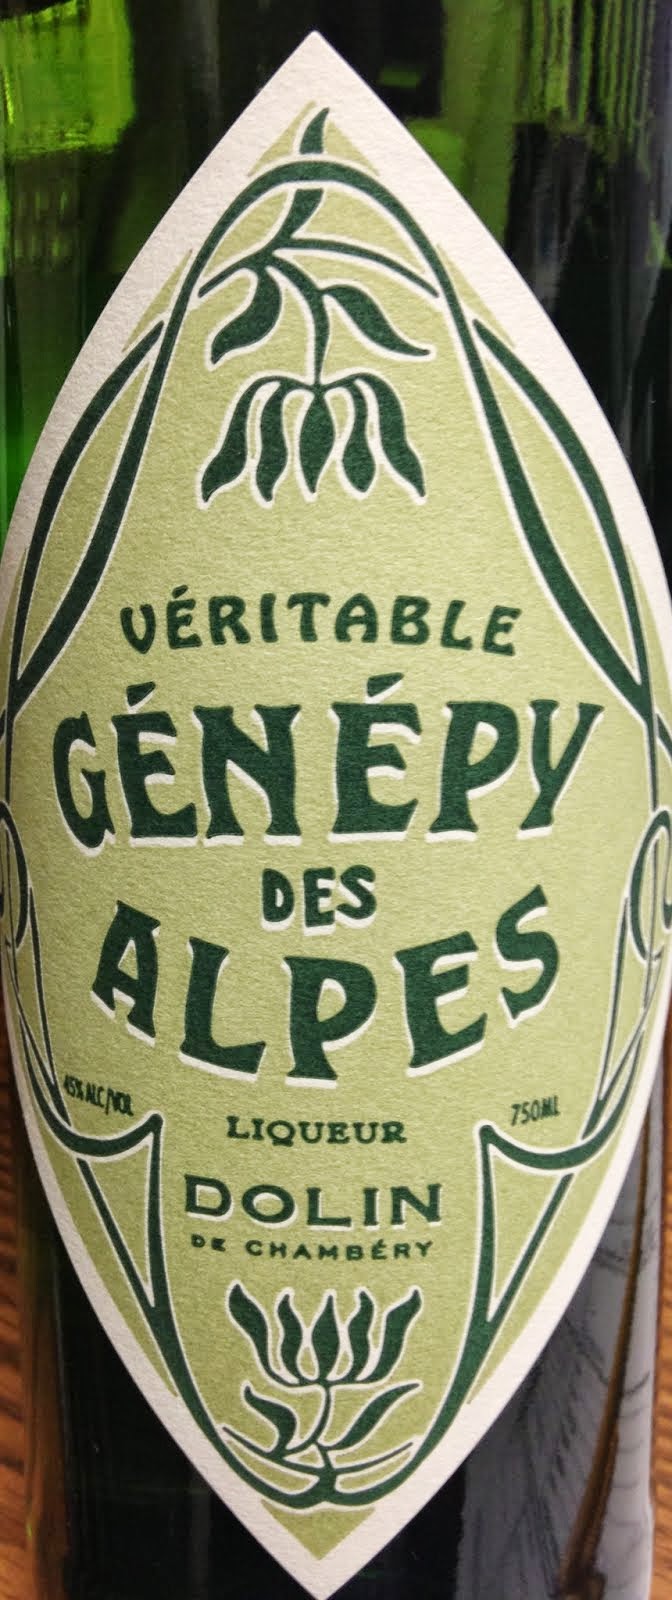 Dolin - Genepy Des Alpes Liqueur (750ml)